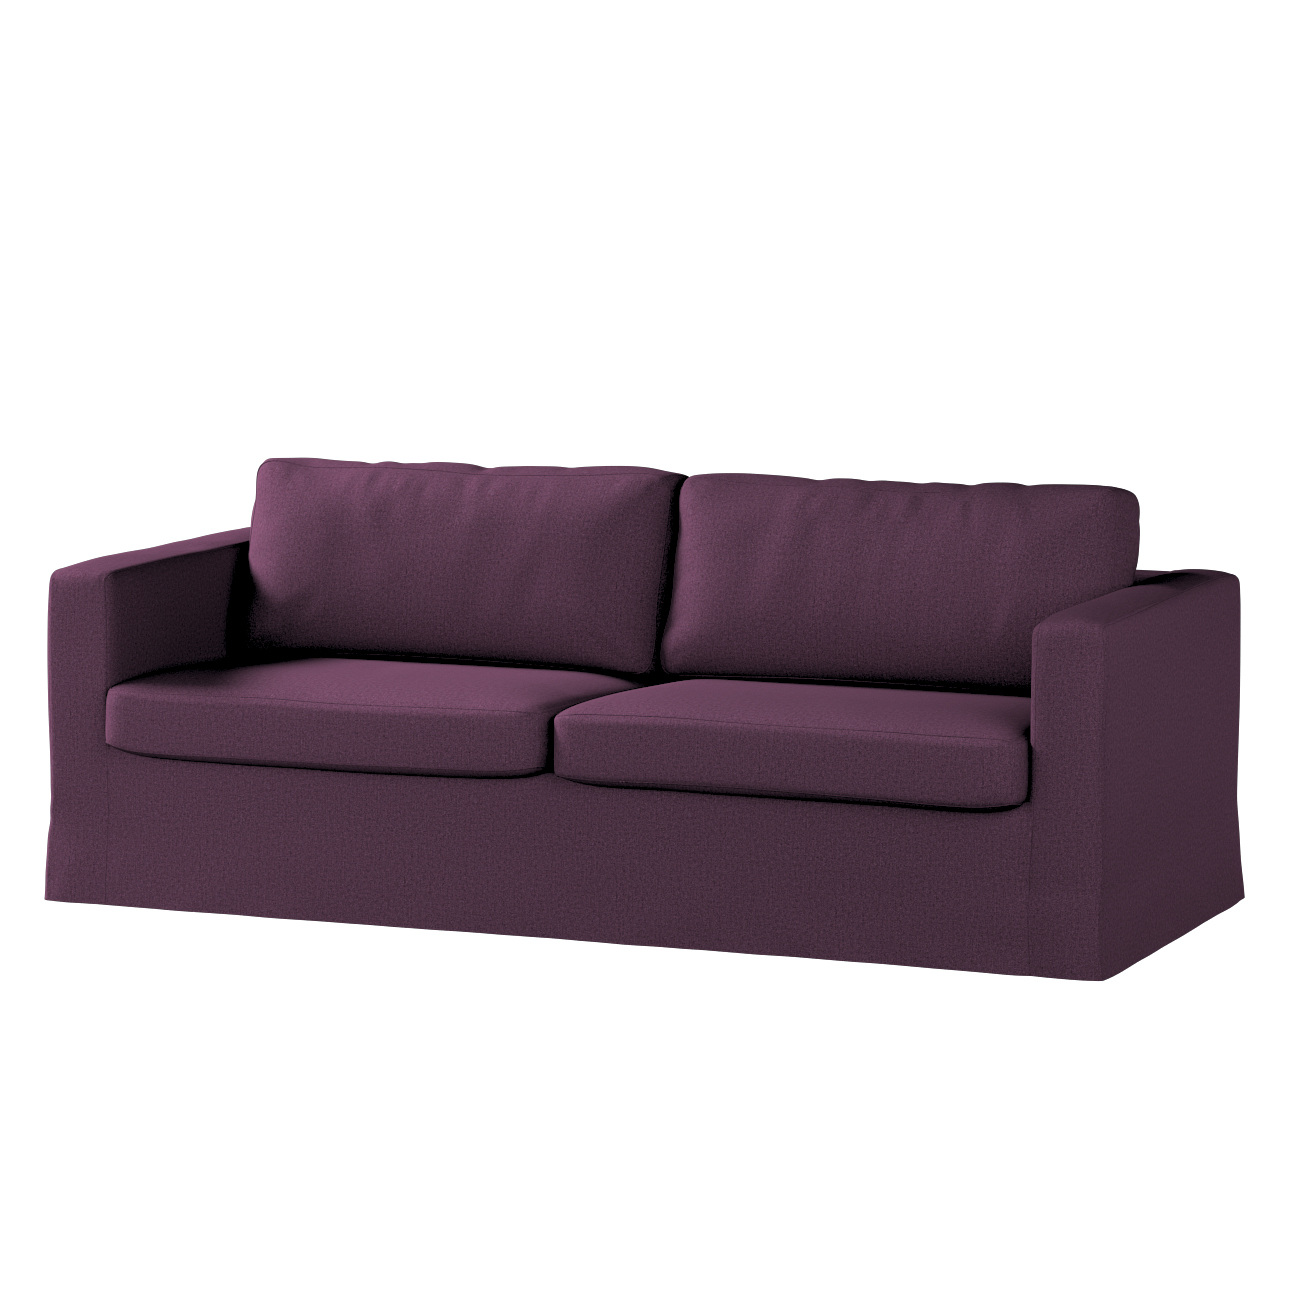 Bezug für Karlstad 3-Sitzer Sofa nicht ausklappbar, lang, pflaume, Bezug fü günstig online kaufen